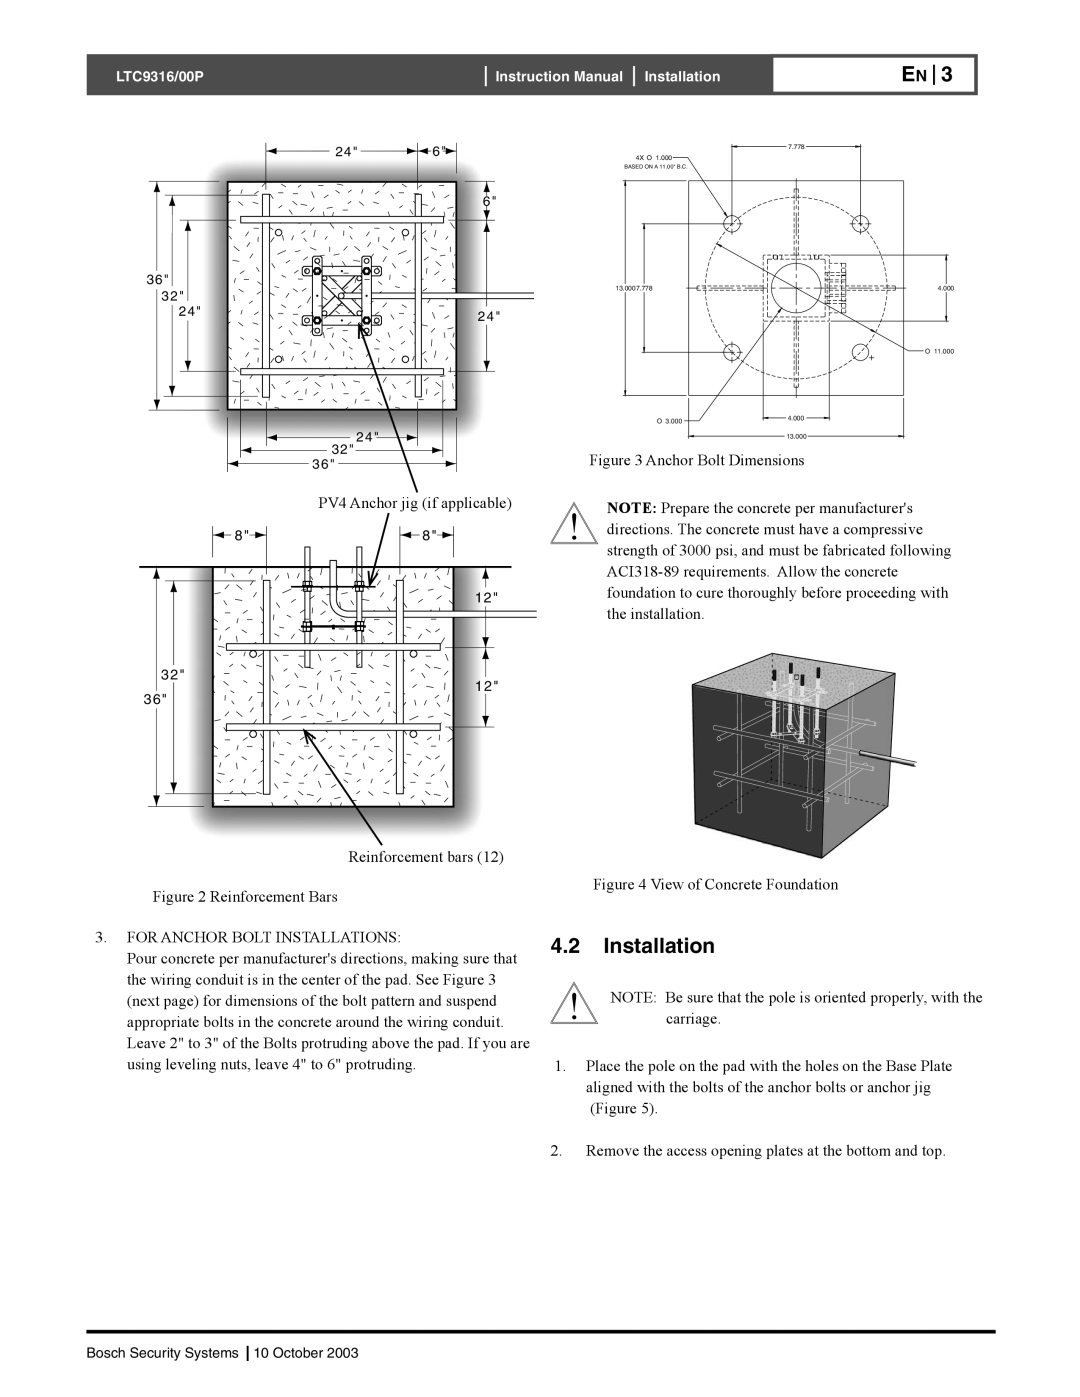 Bosch Appliances 00P, LTC9316 installation manual 4.2Installation 